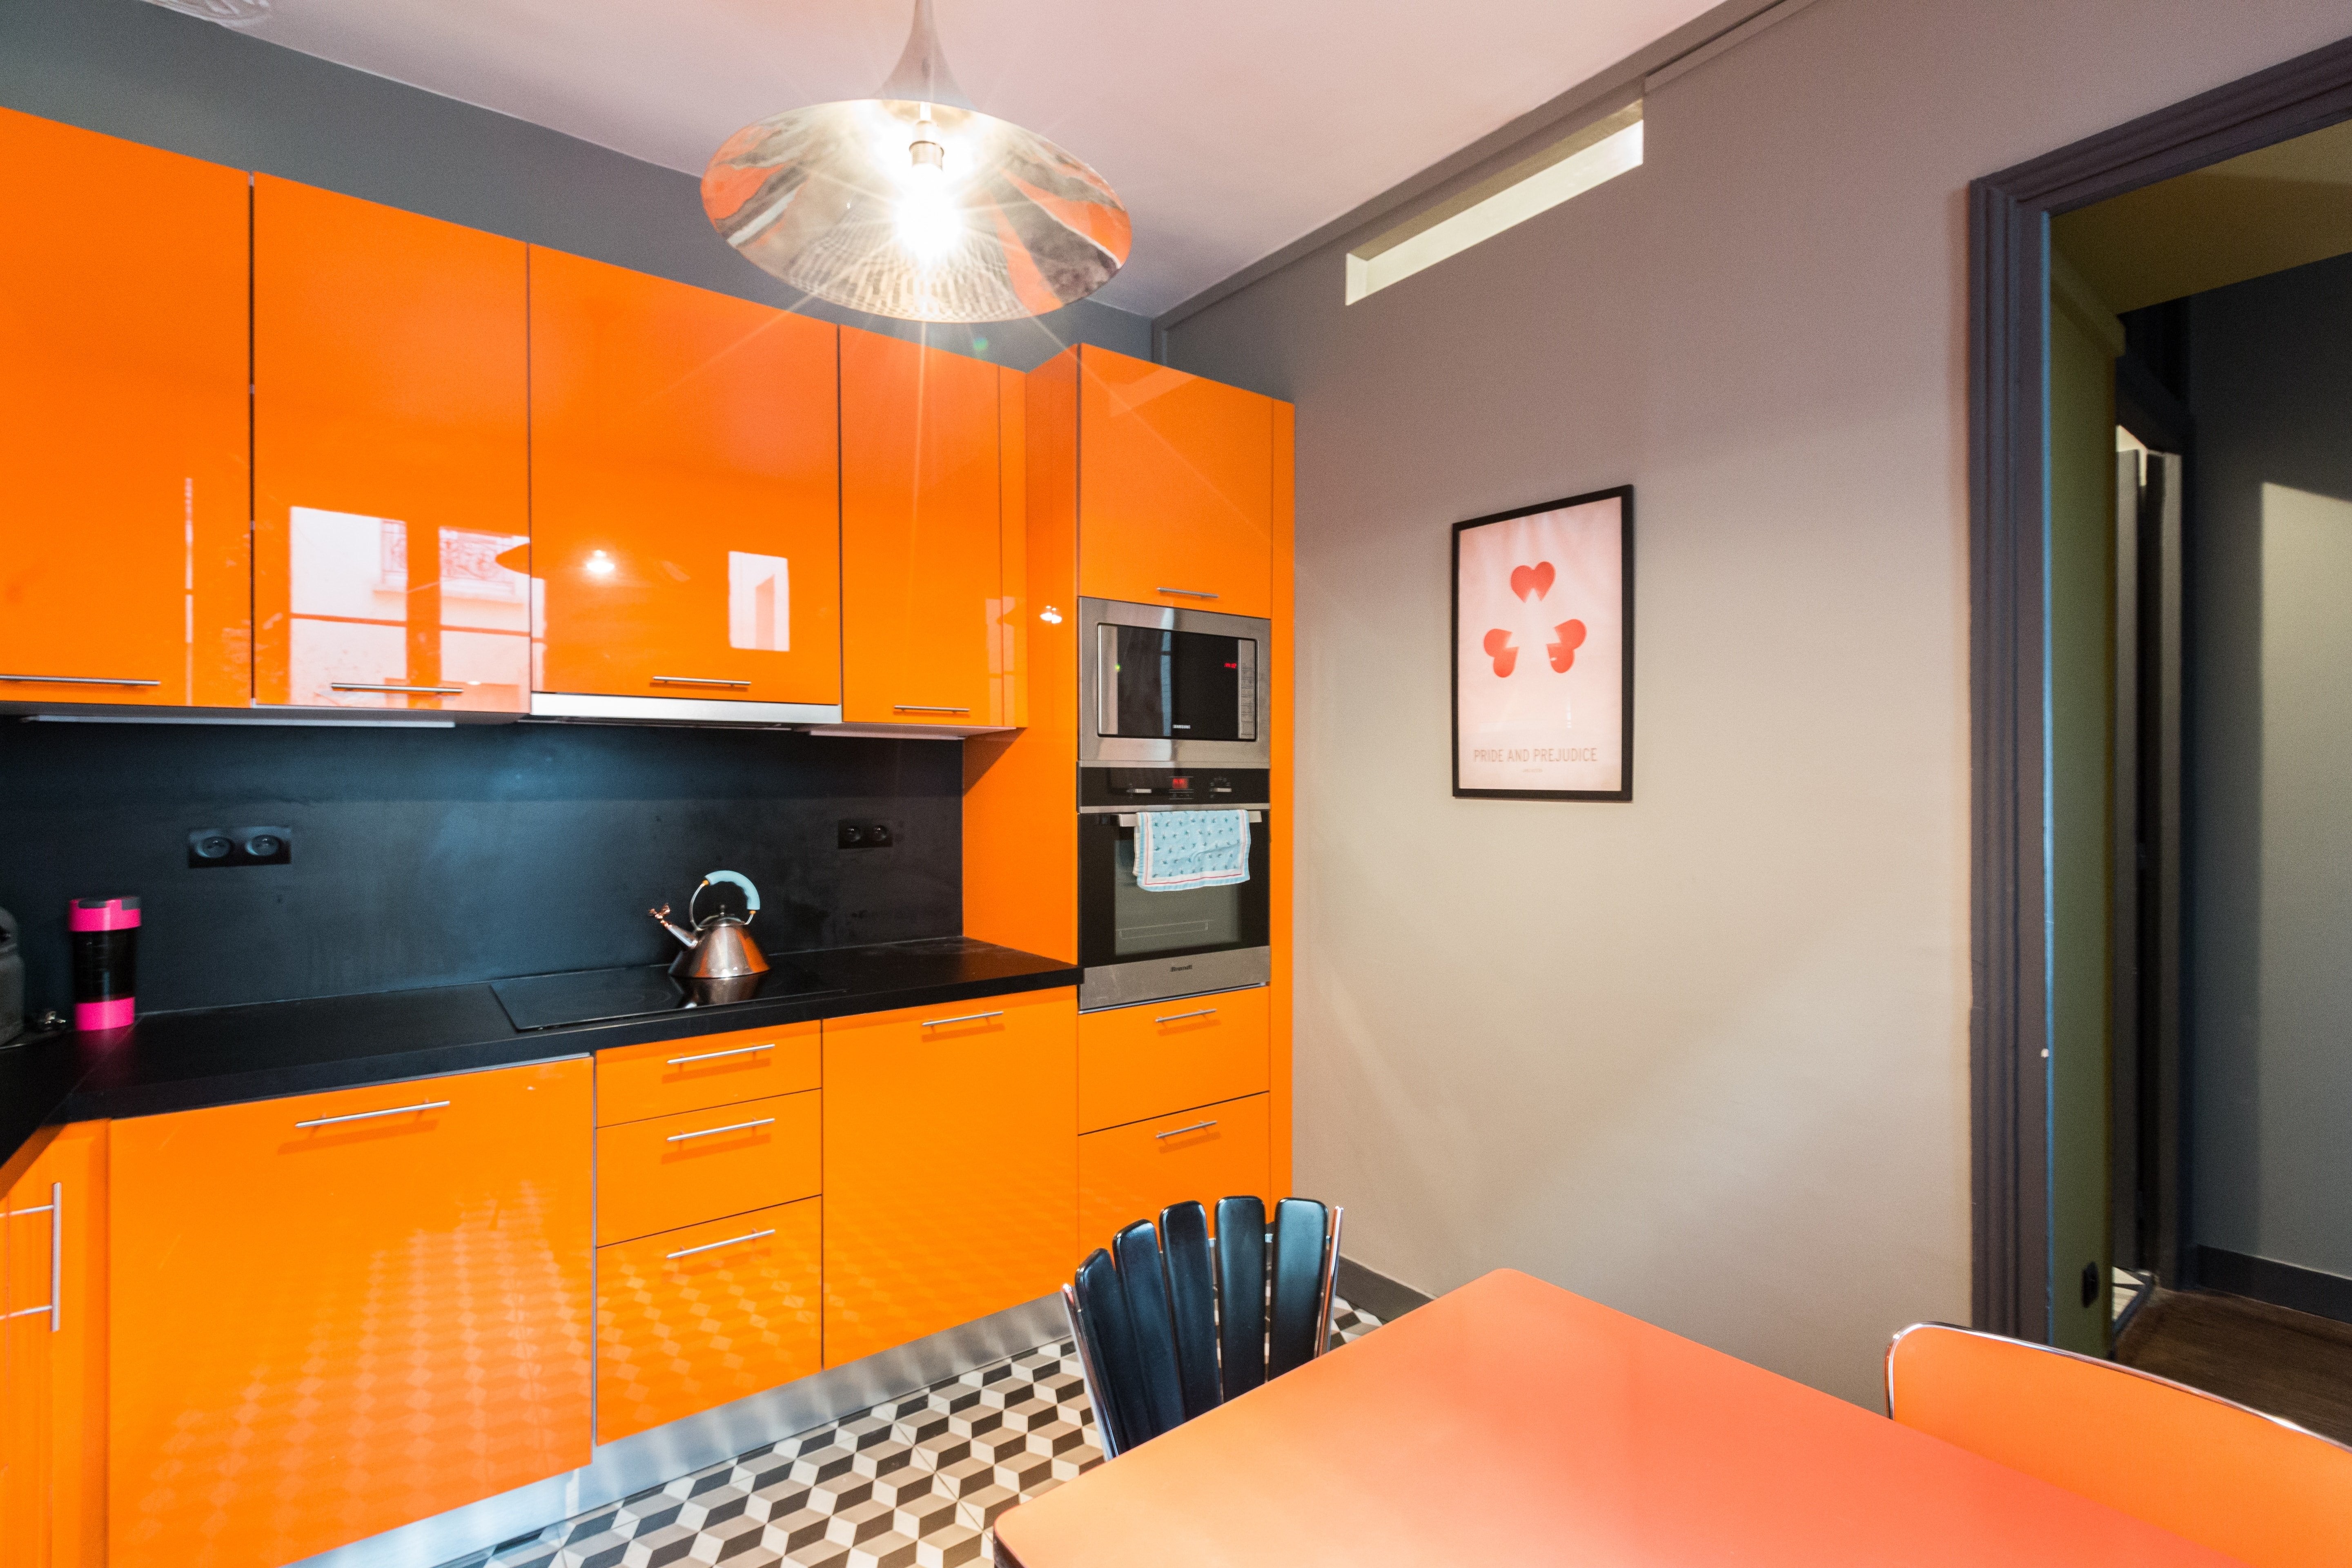 Обои оранжевого цвета для кухни: фото, цены